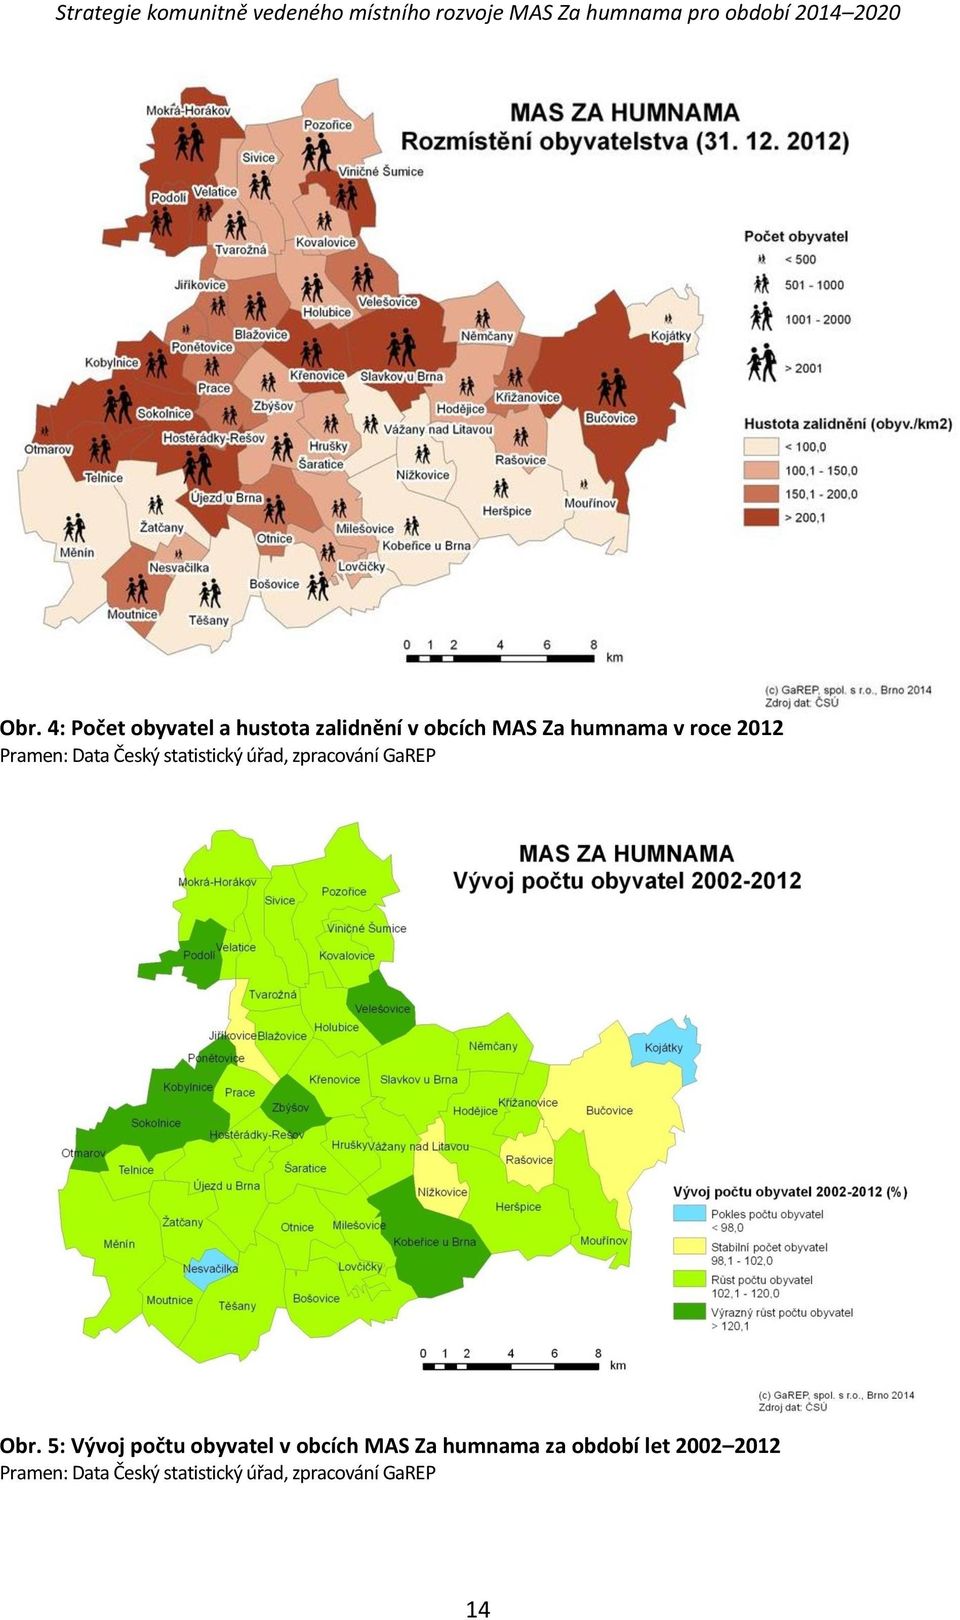 Obr. 5: Vývoj počtu obyvatel v obcích MAS Za humnama za období let